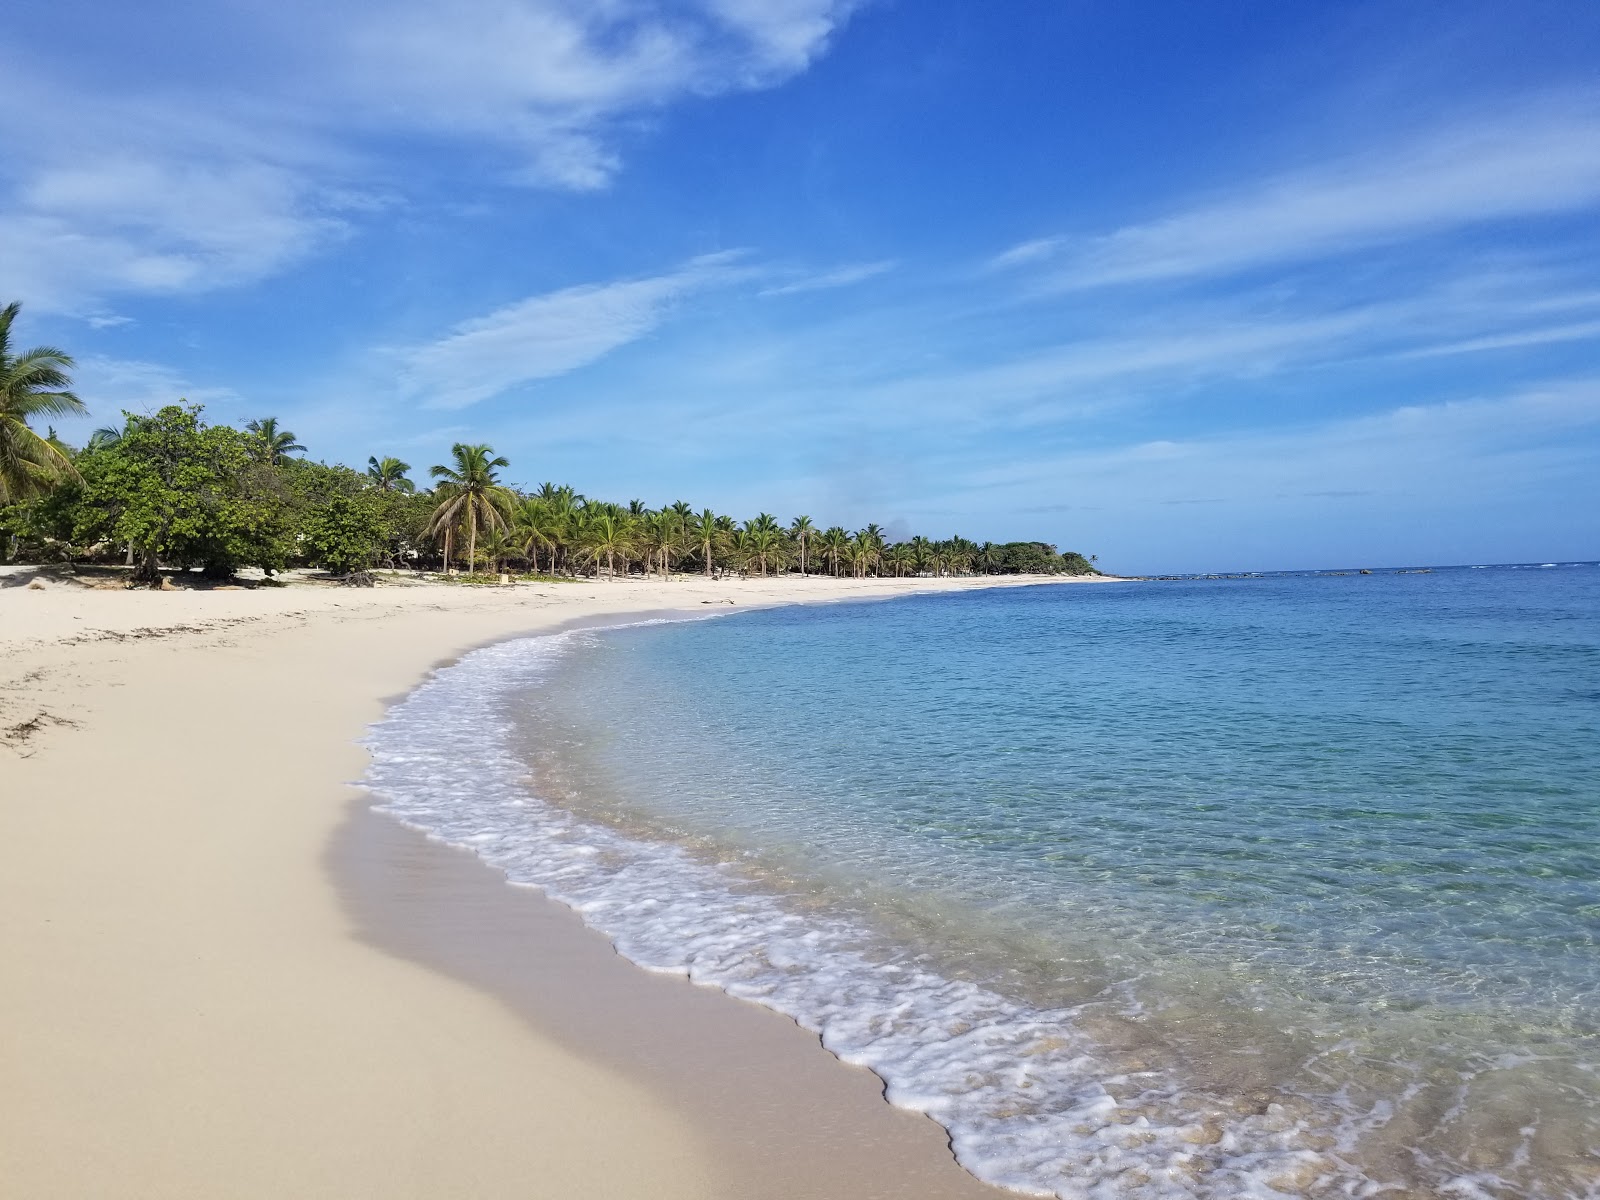 Playa Grande Luperon'in fotoğrafı parlak ince kum yüzey ile